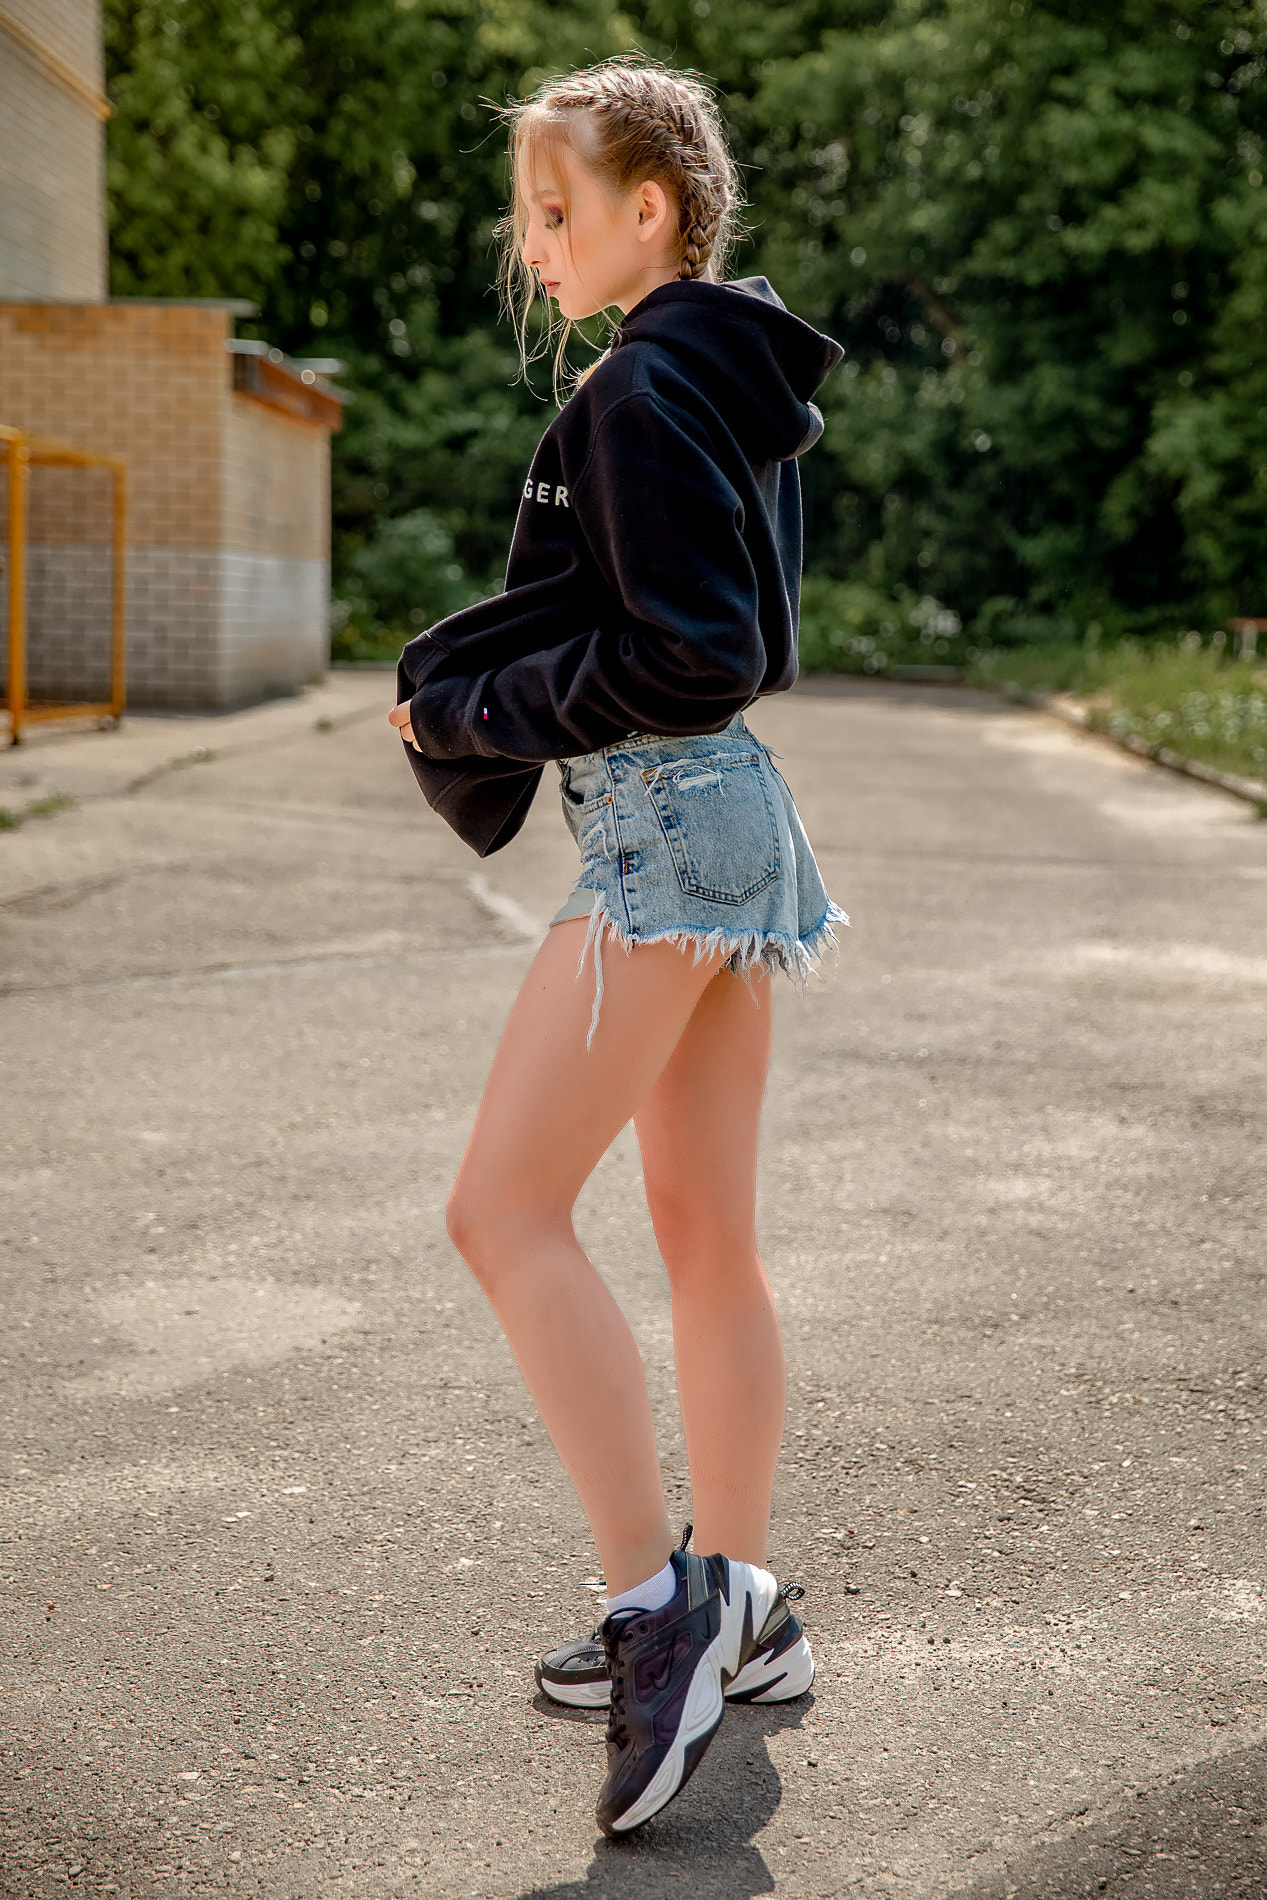 Dmitry Korneev Women Blonde Braids Hoods Shorts Jeans Denim Sneakers Outdoors Sportswear Sweatshirts 1267x1900